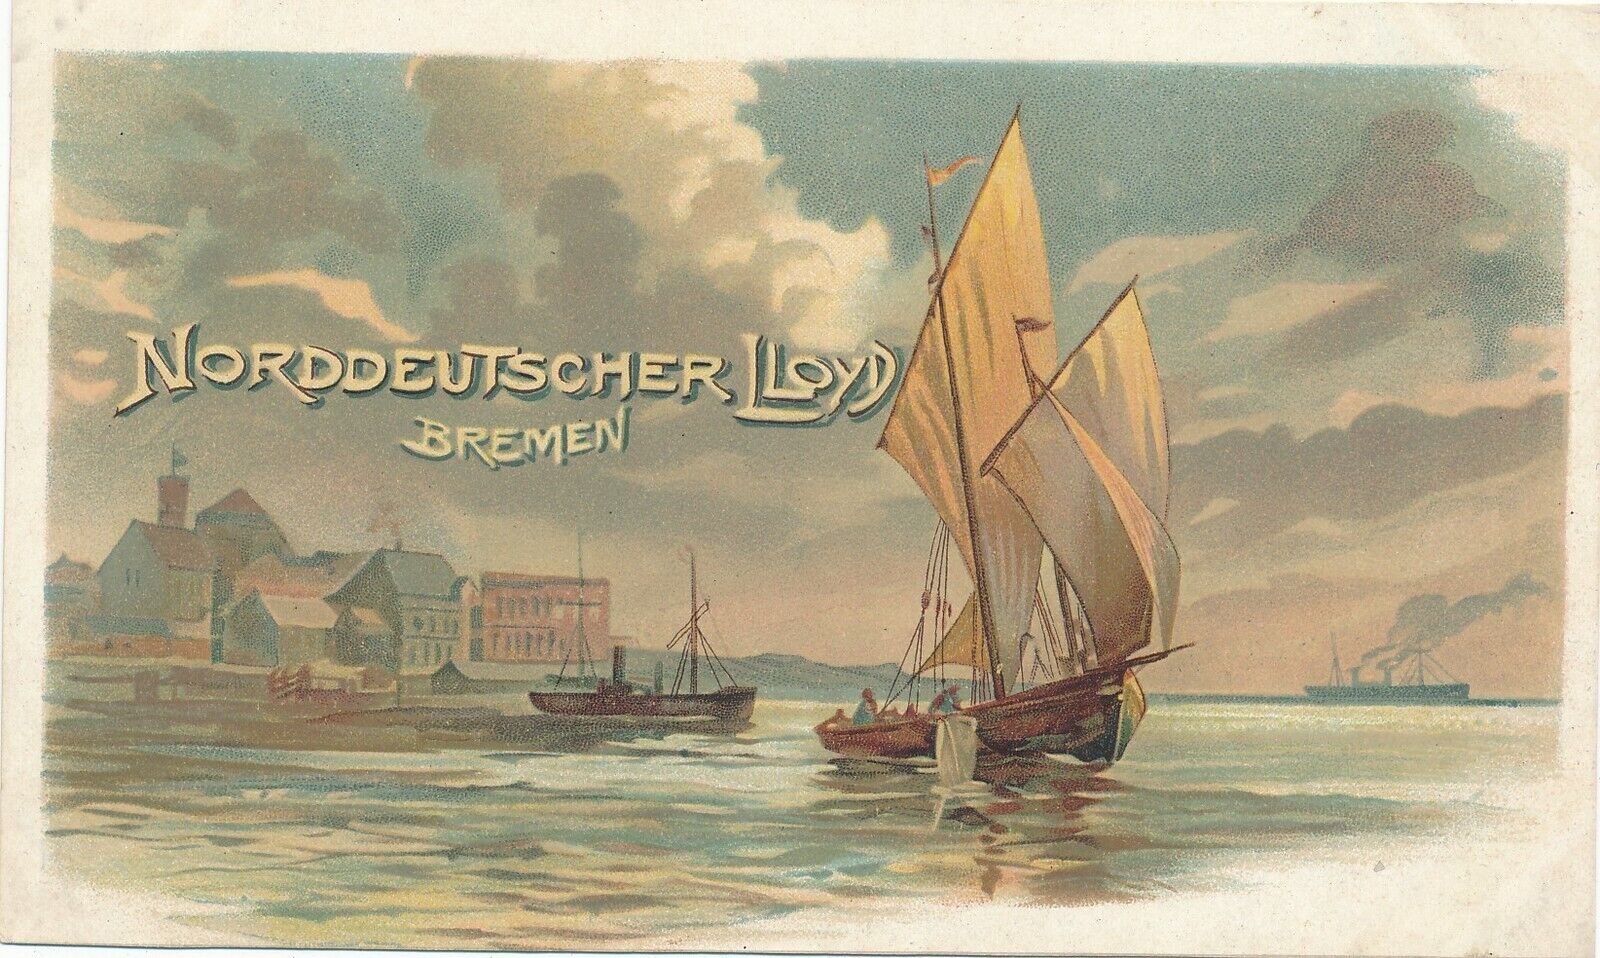 Norddeutscher Lloyd Bremen Postcard – udb (pre 1908)